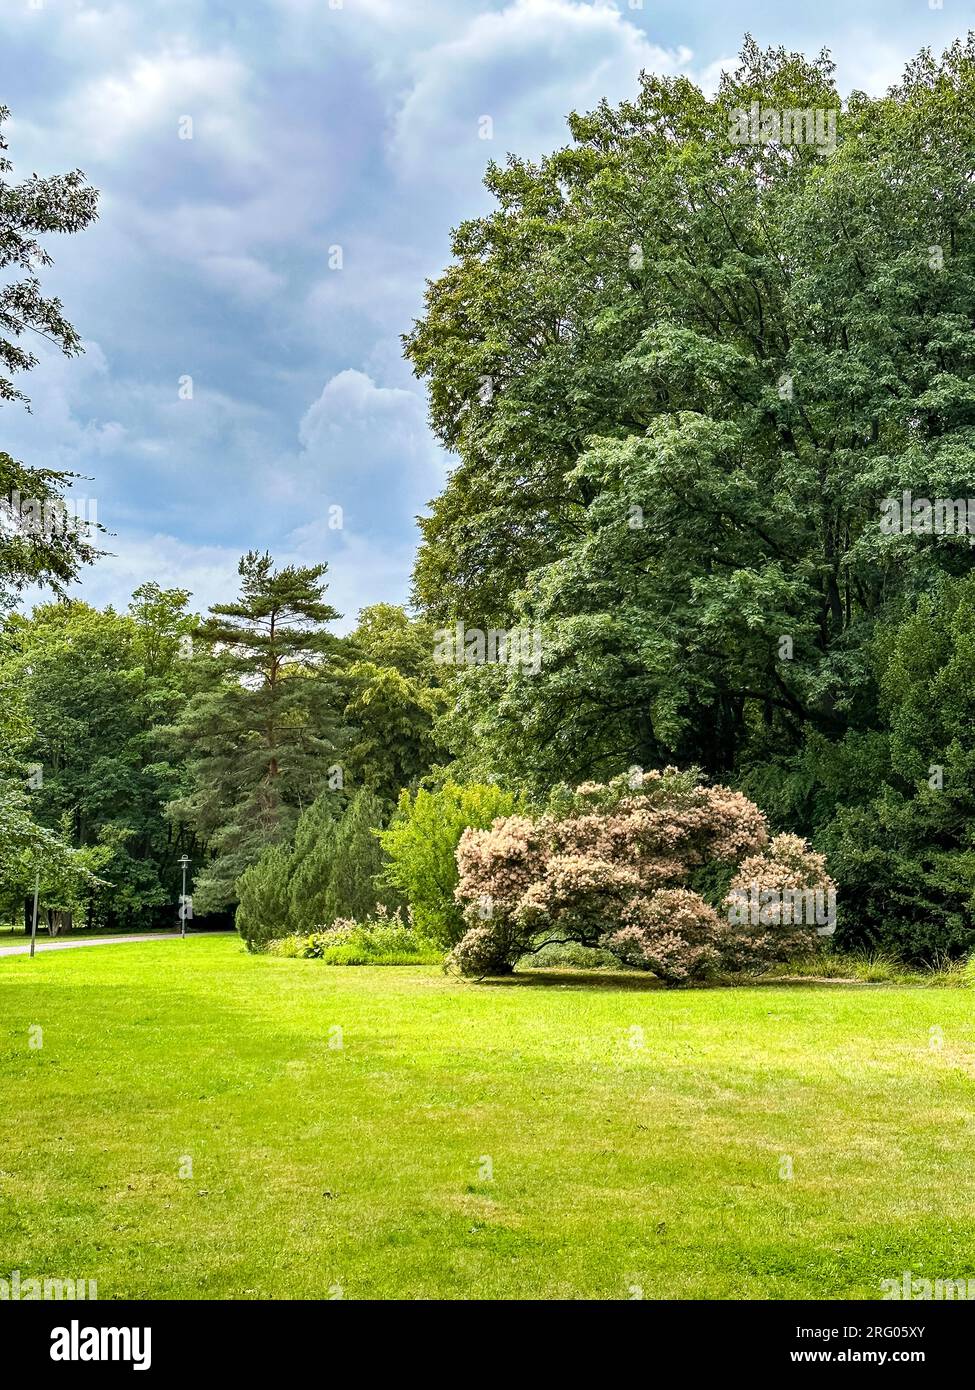 The popular 'Britzer garden' (Britzer Garten), Berlin - Germany Stock Photo